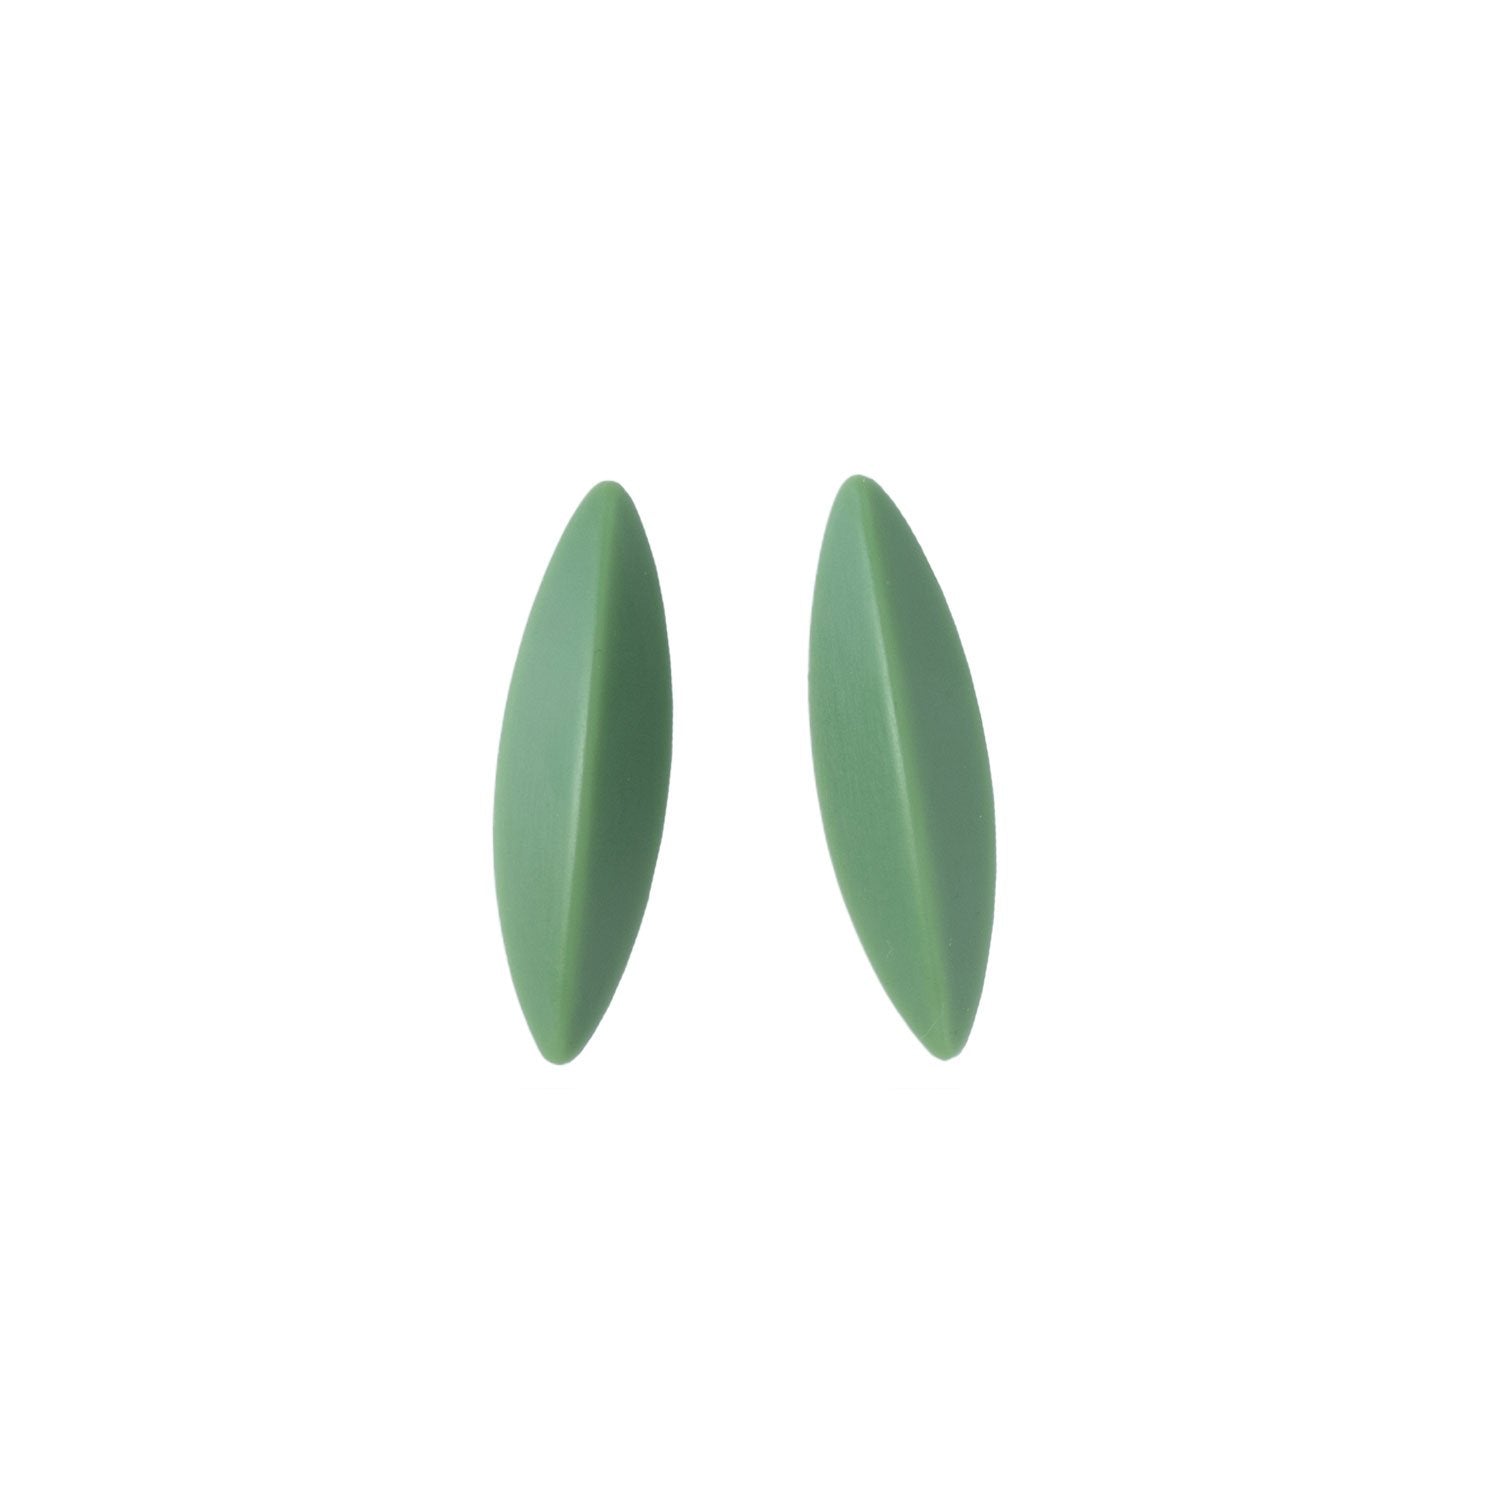 LEAVES earrings, sage green